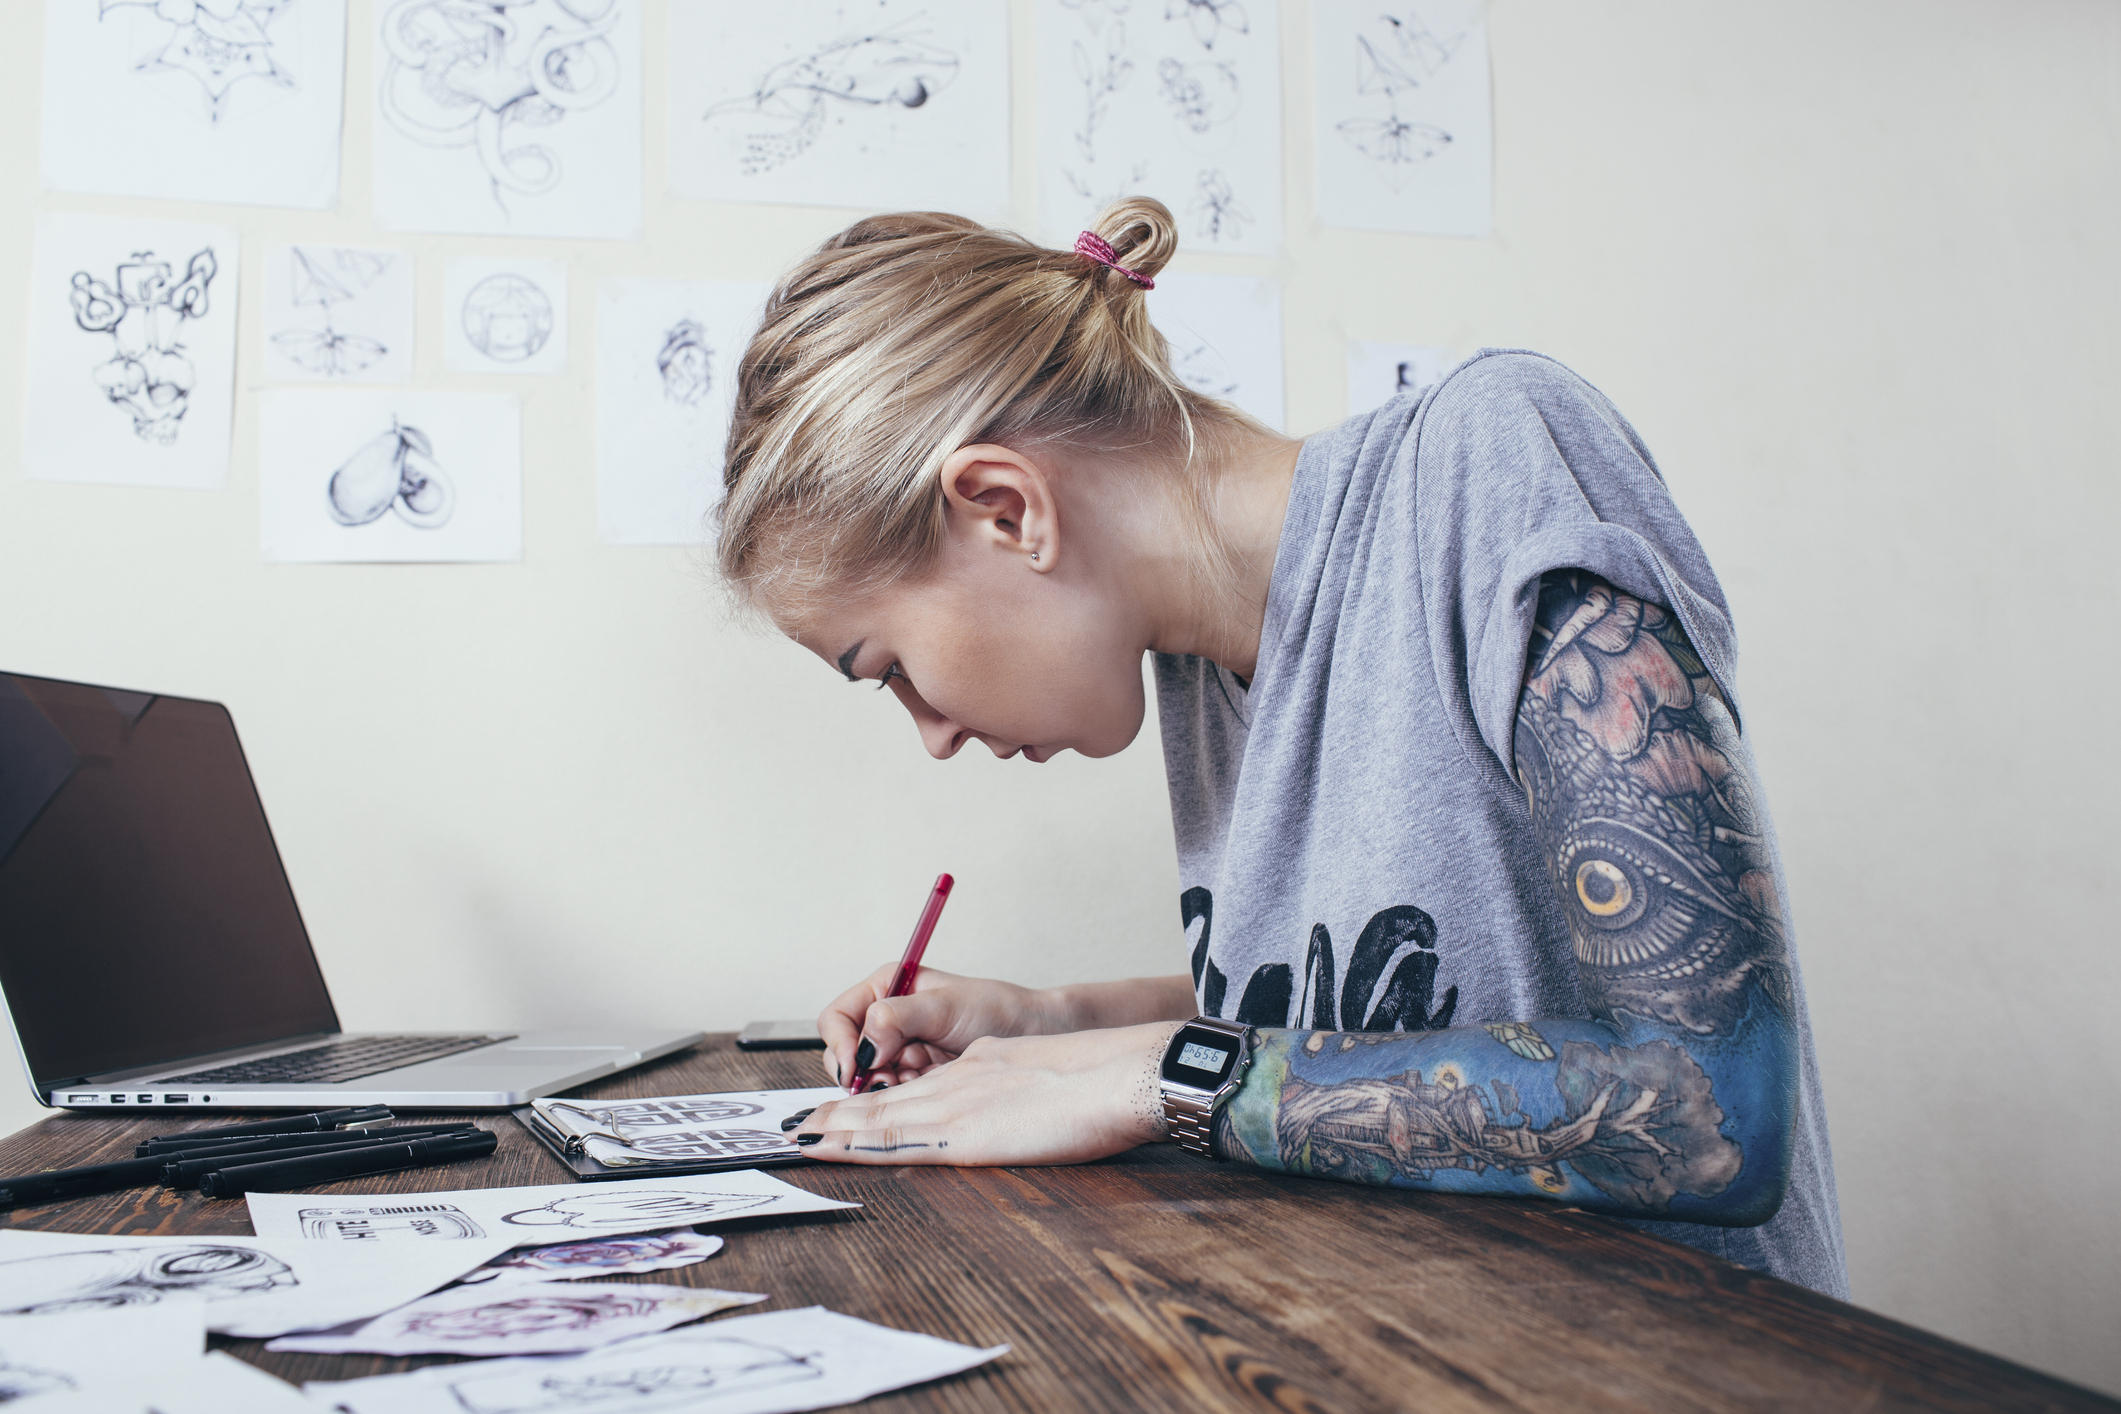 las-mujeres-con-tatuajes-son-mas-atractivas-de-acuerdo-a-un-estudio